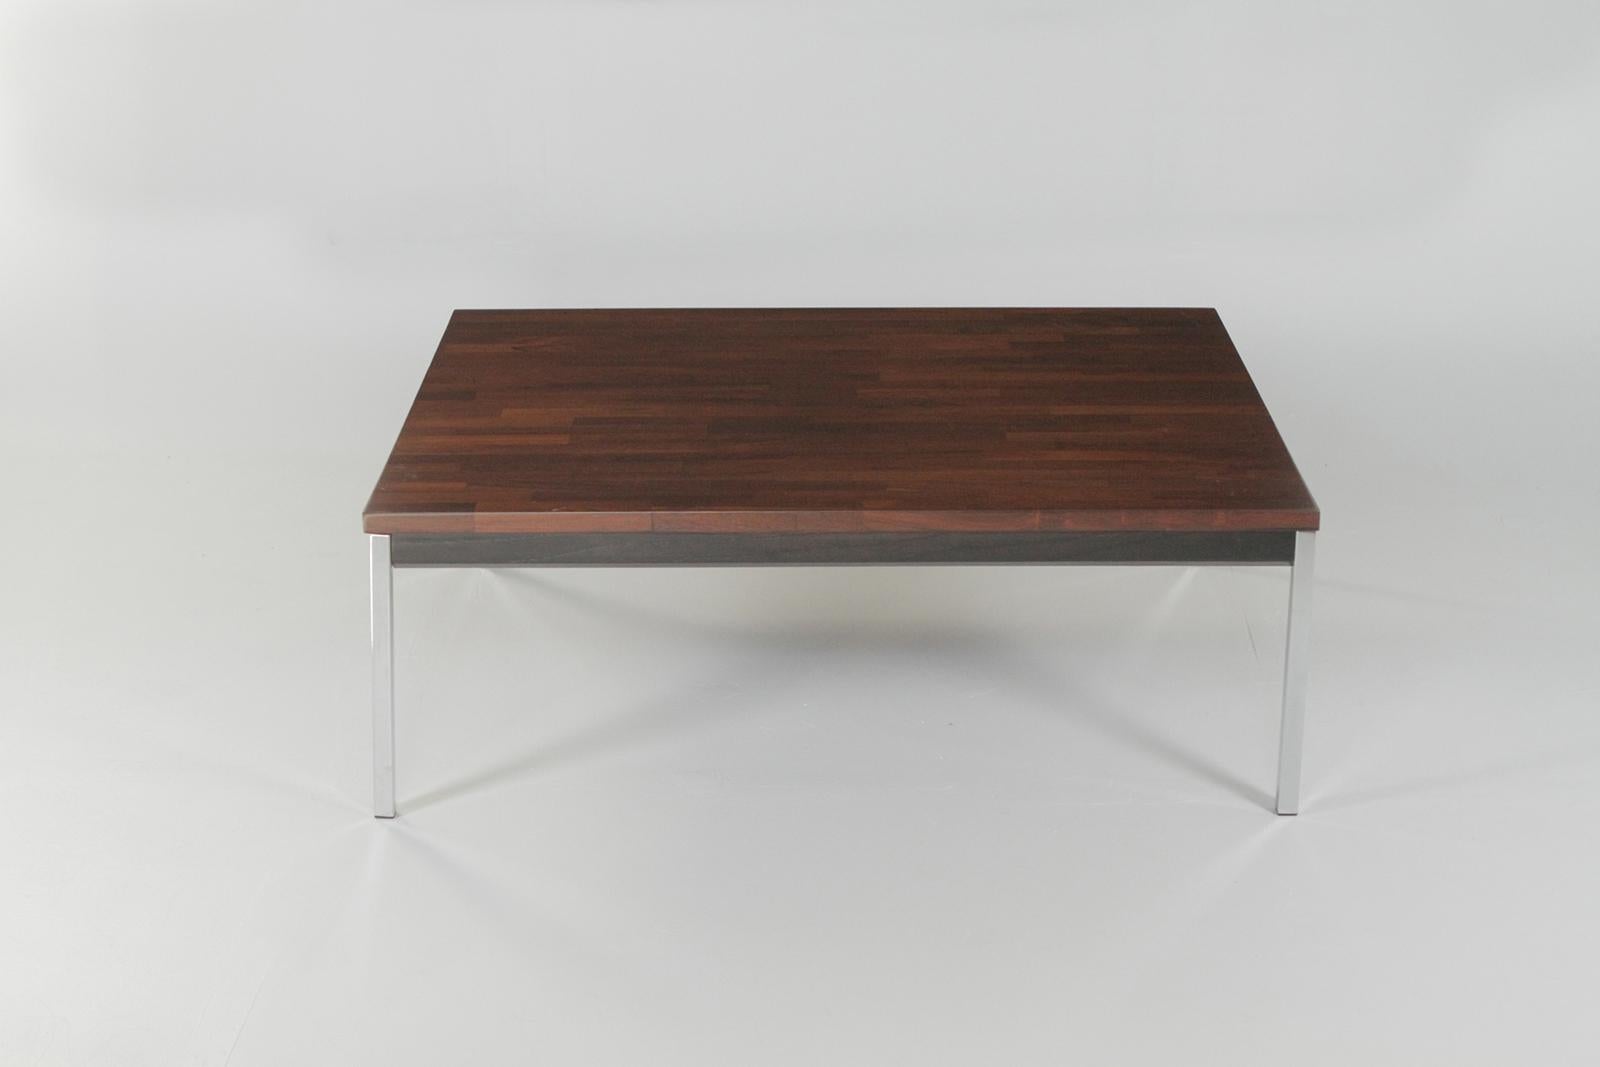 Une table basse élégante de style moderne du milieu du siècle avec un magnifique plateau en placage de bois de rose, un tablier en bois ébonisé et des pieds droits simples en chrome.

Non marqué mais ressemble à Knoll.